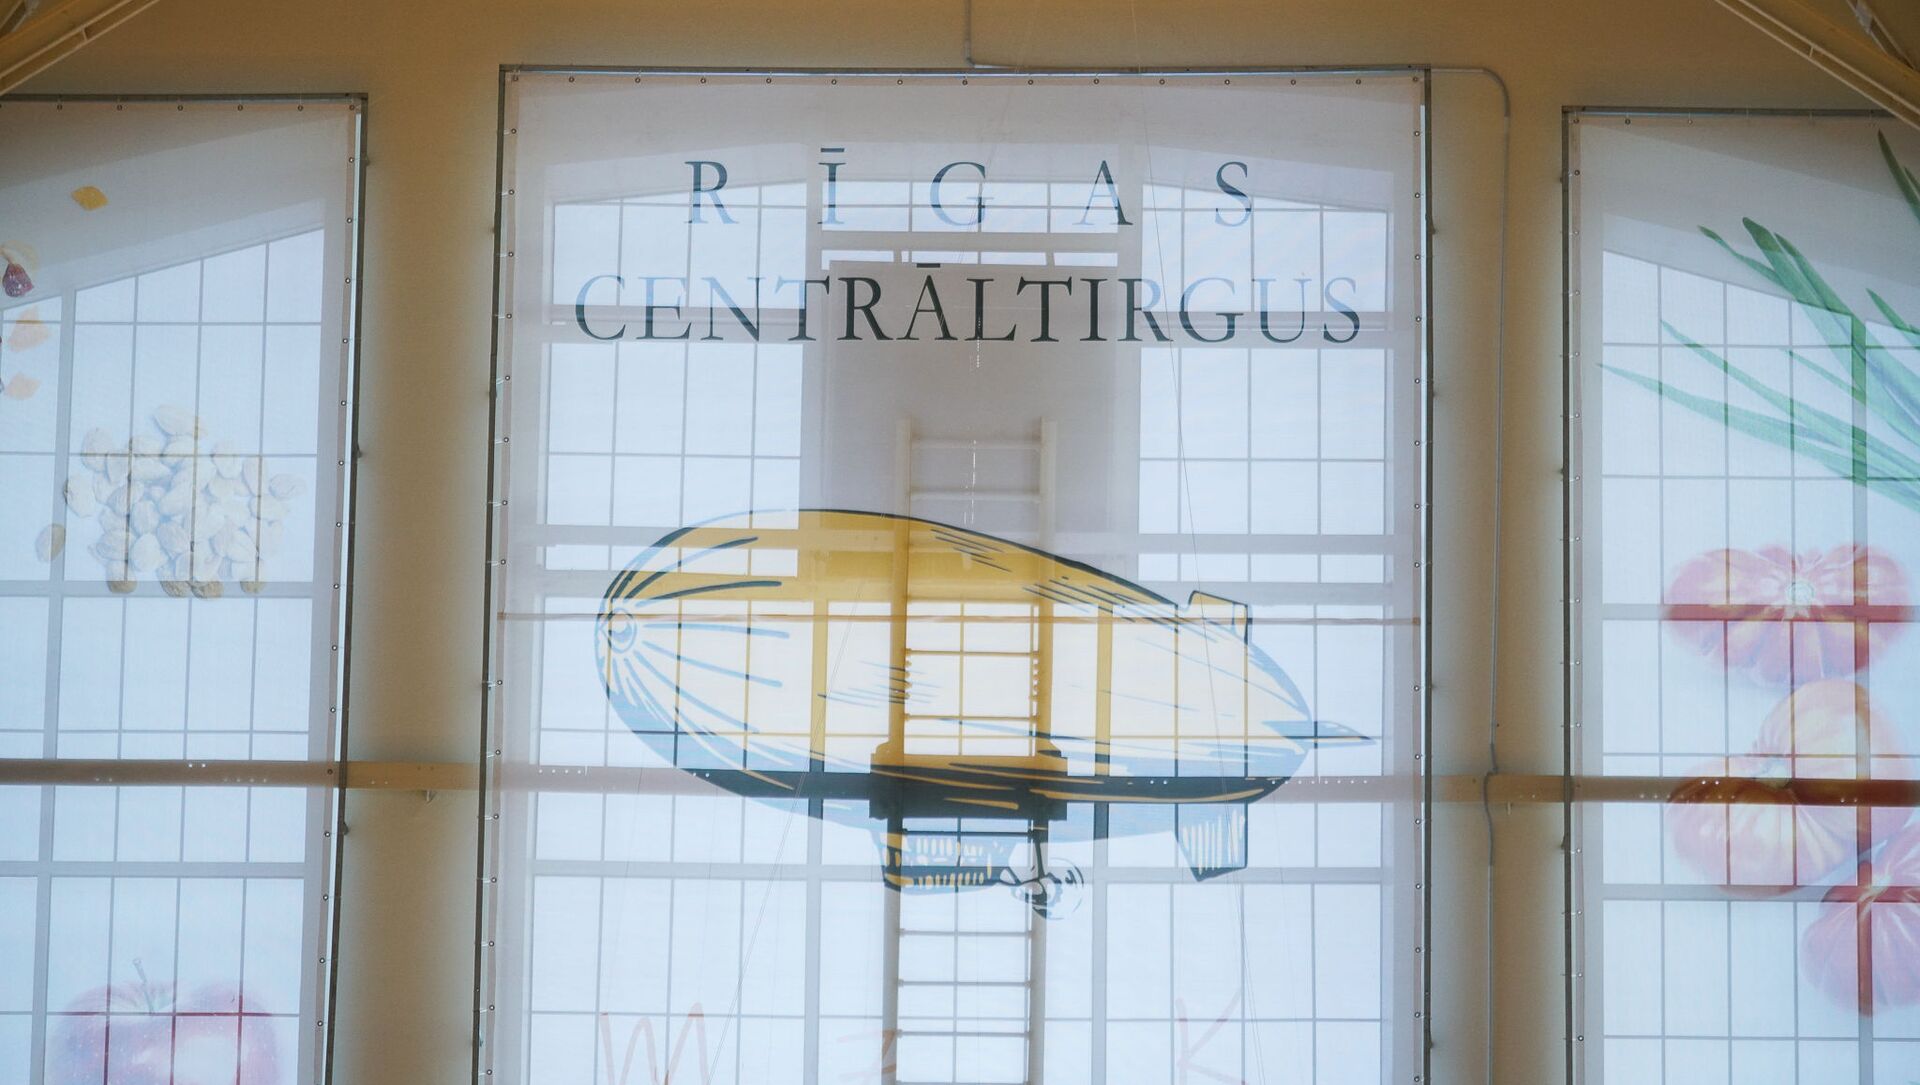 Открытие гастрономического павильона на Рижском центральном рынке - Sputnik Латвия, 1920, 01.04.2021